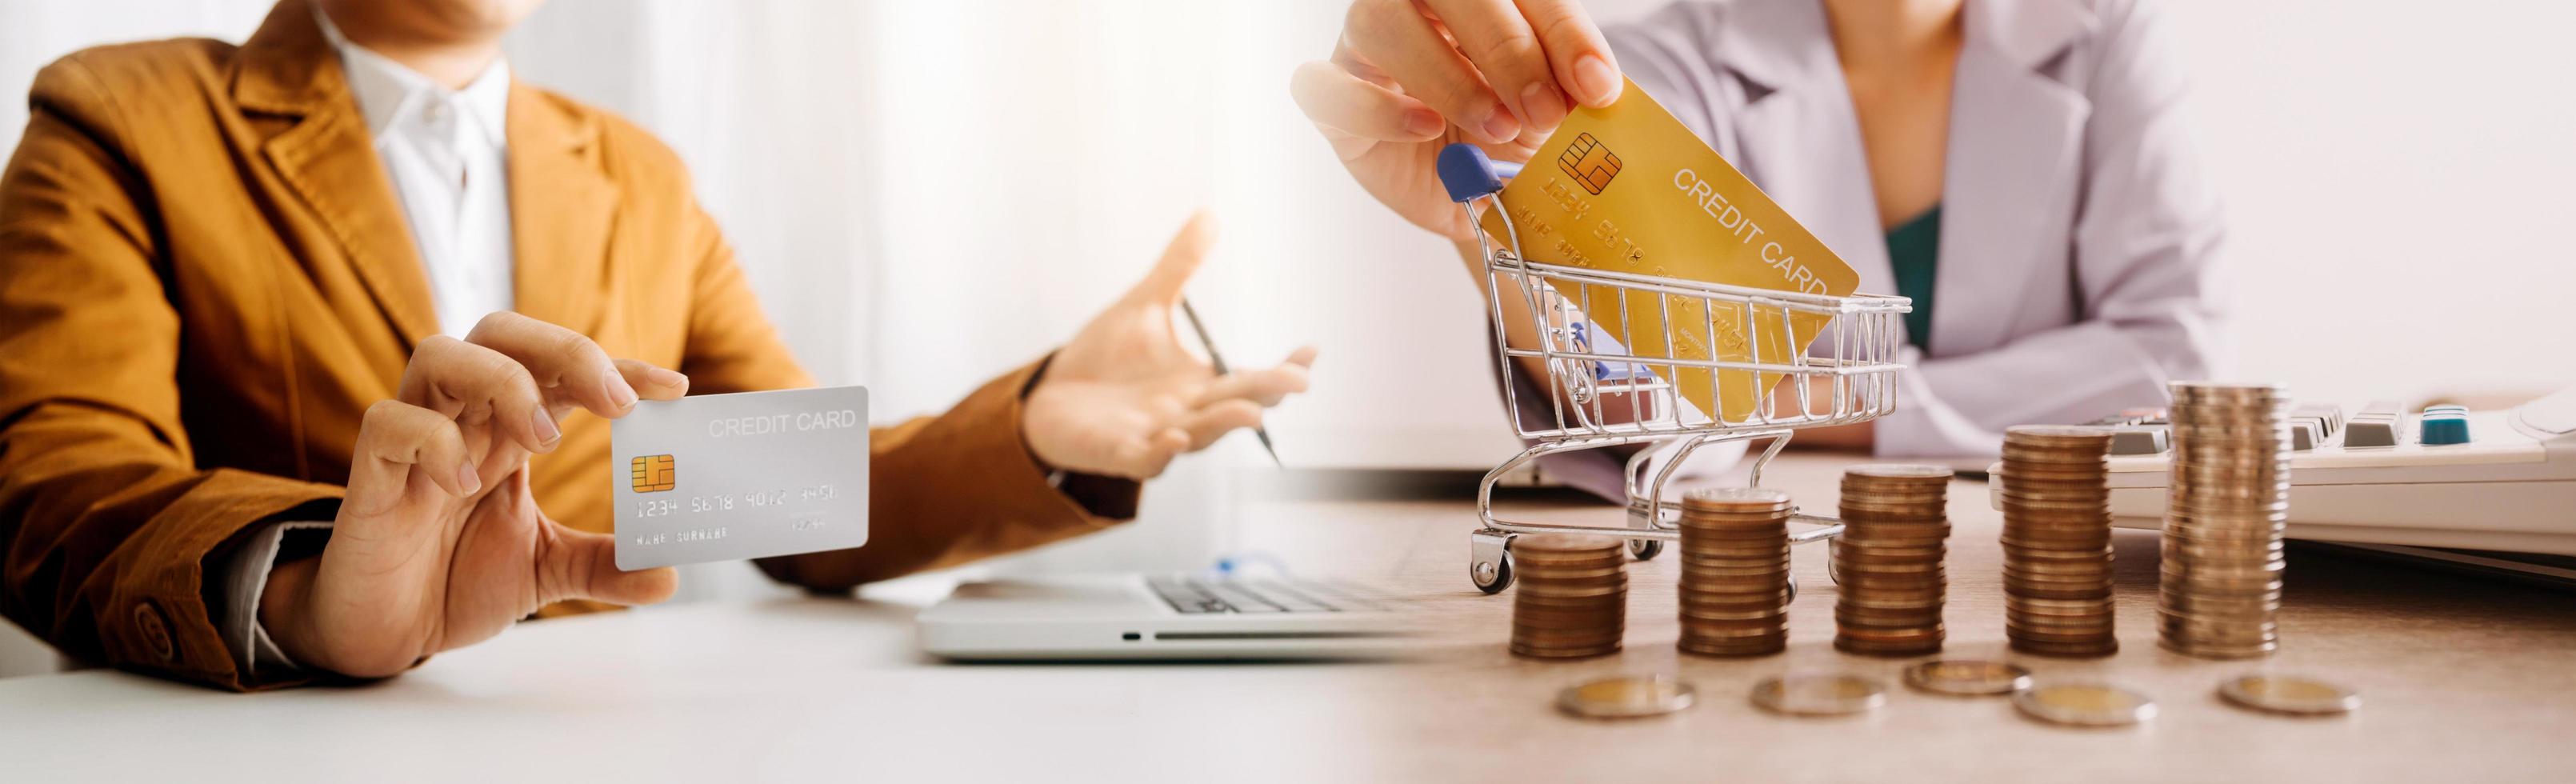 affärsman som använder kreditkort och kalkylator för att handla online, selektivt fokus. foto